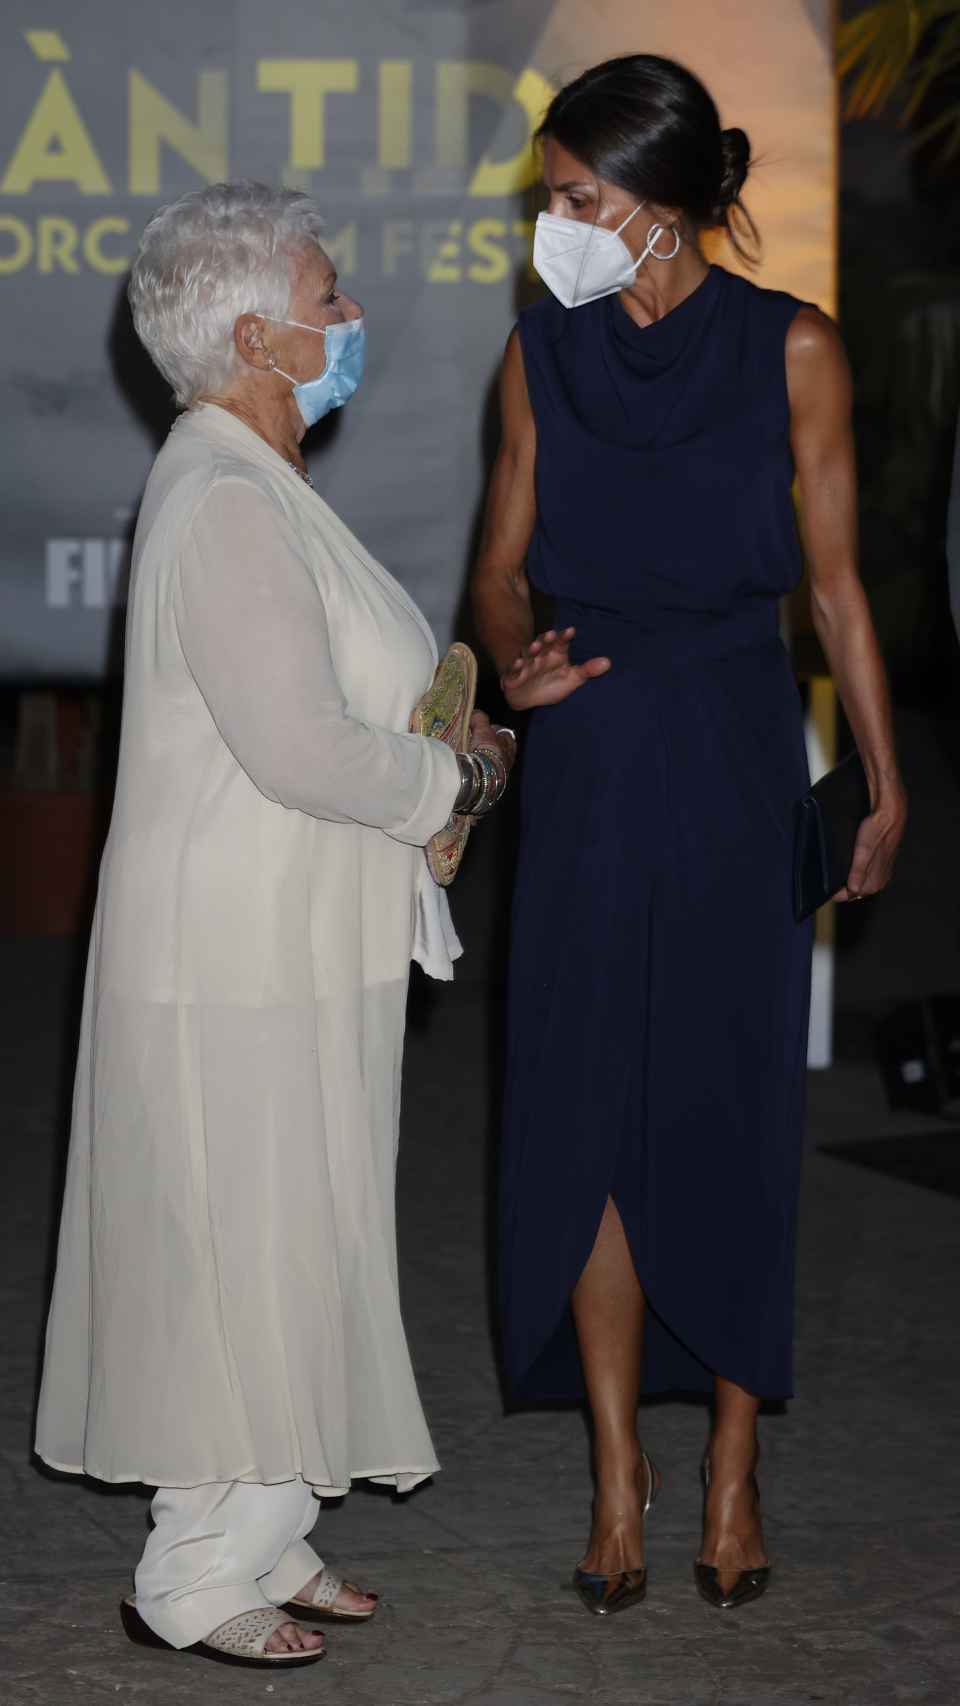 La reina Letizia mostró su admiración por la actriz Judi Dench.